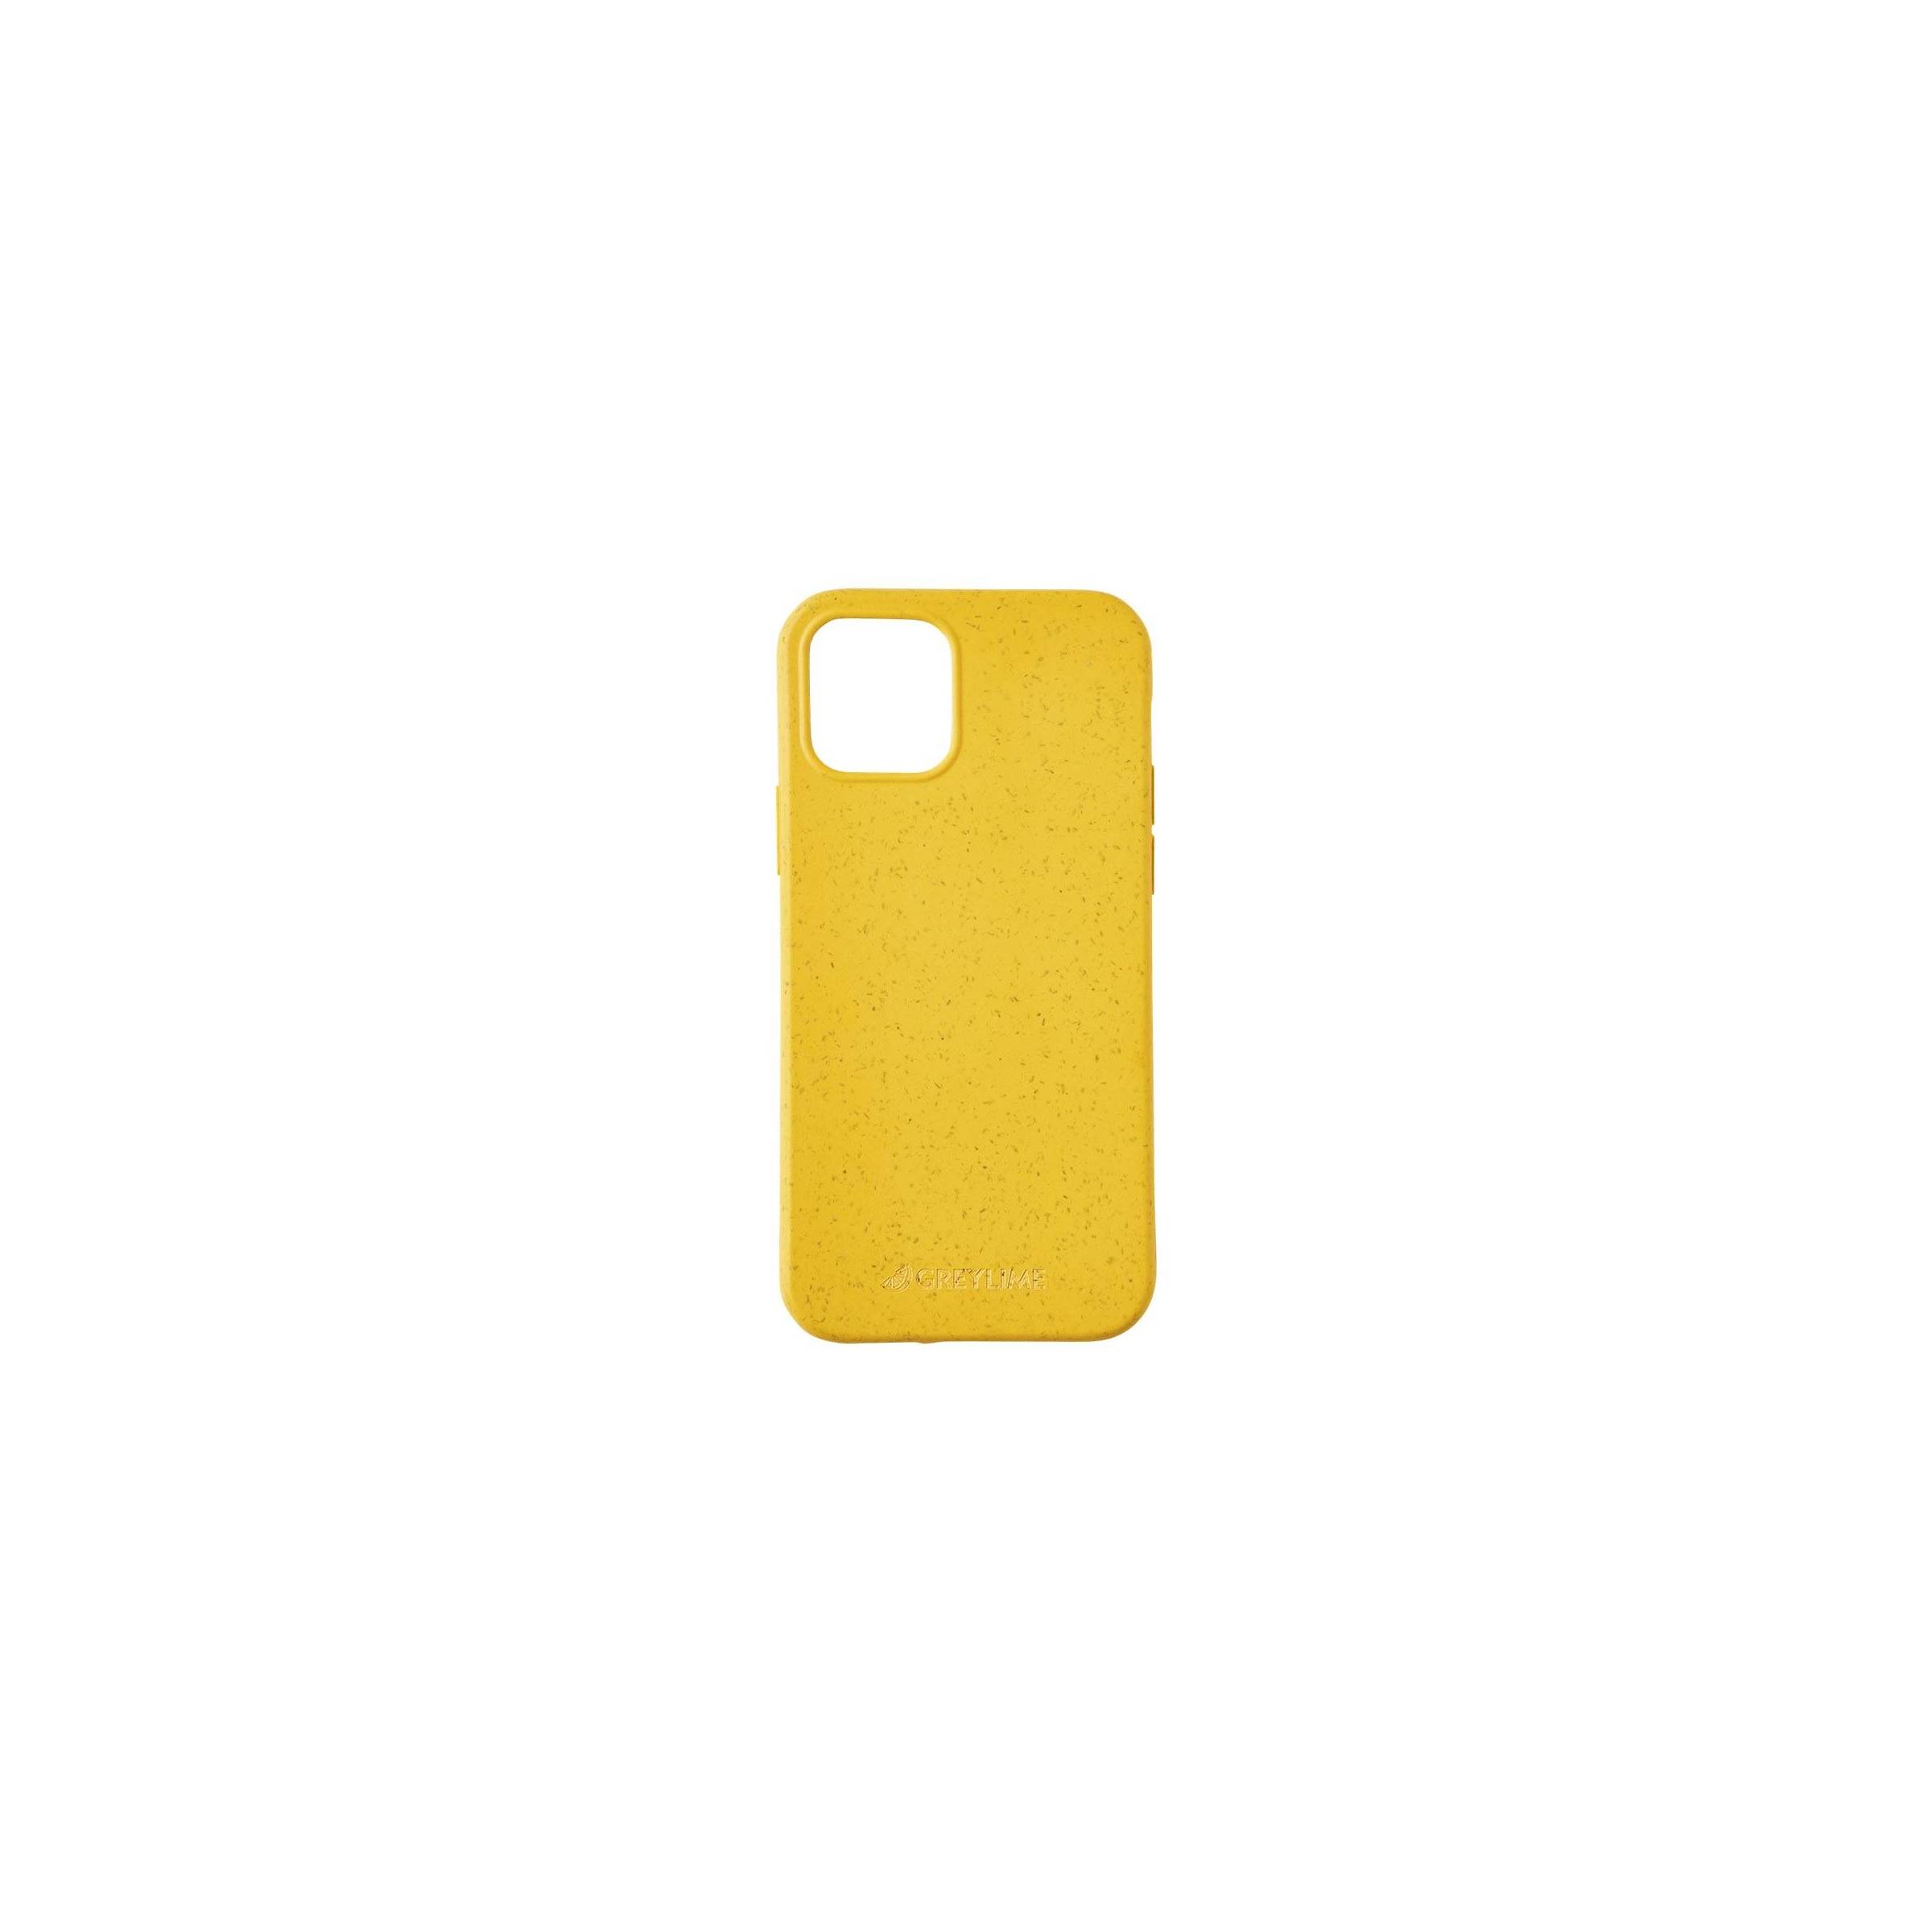 Bilde av Greylime Iphone 12/12 Pro Biodegradable Cover, Yellow